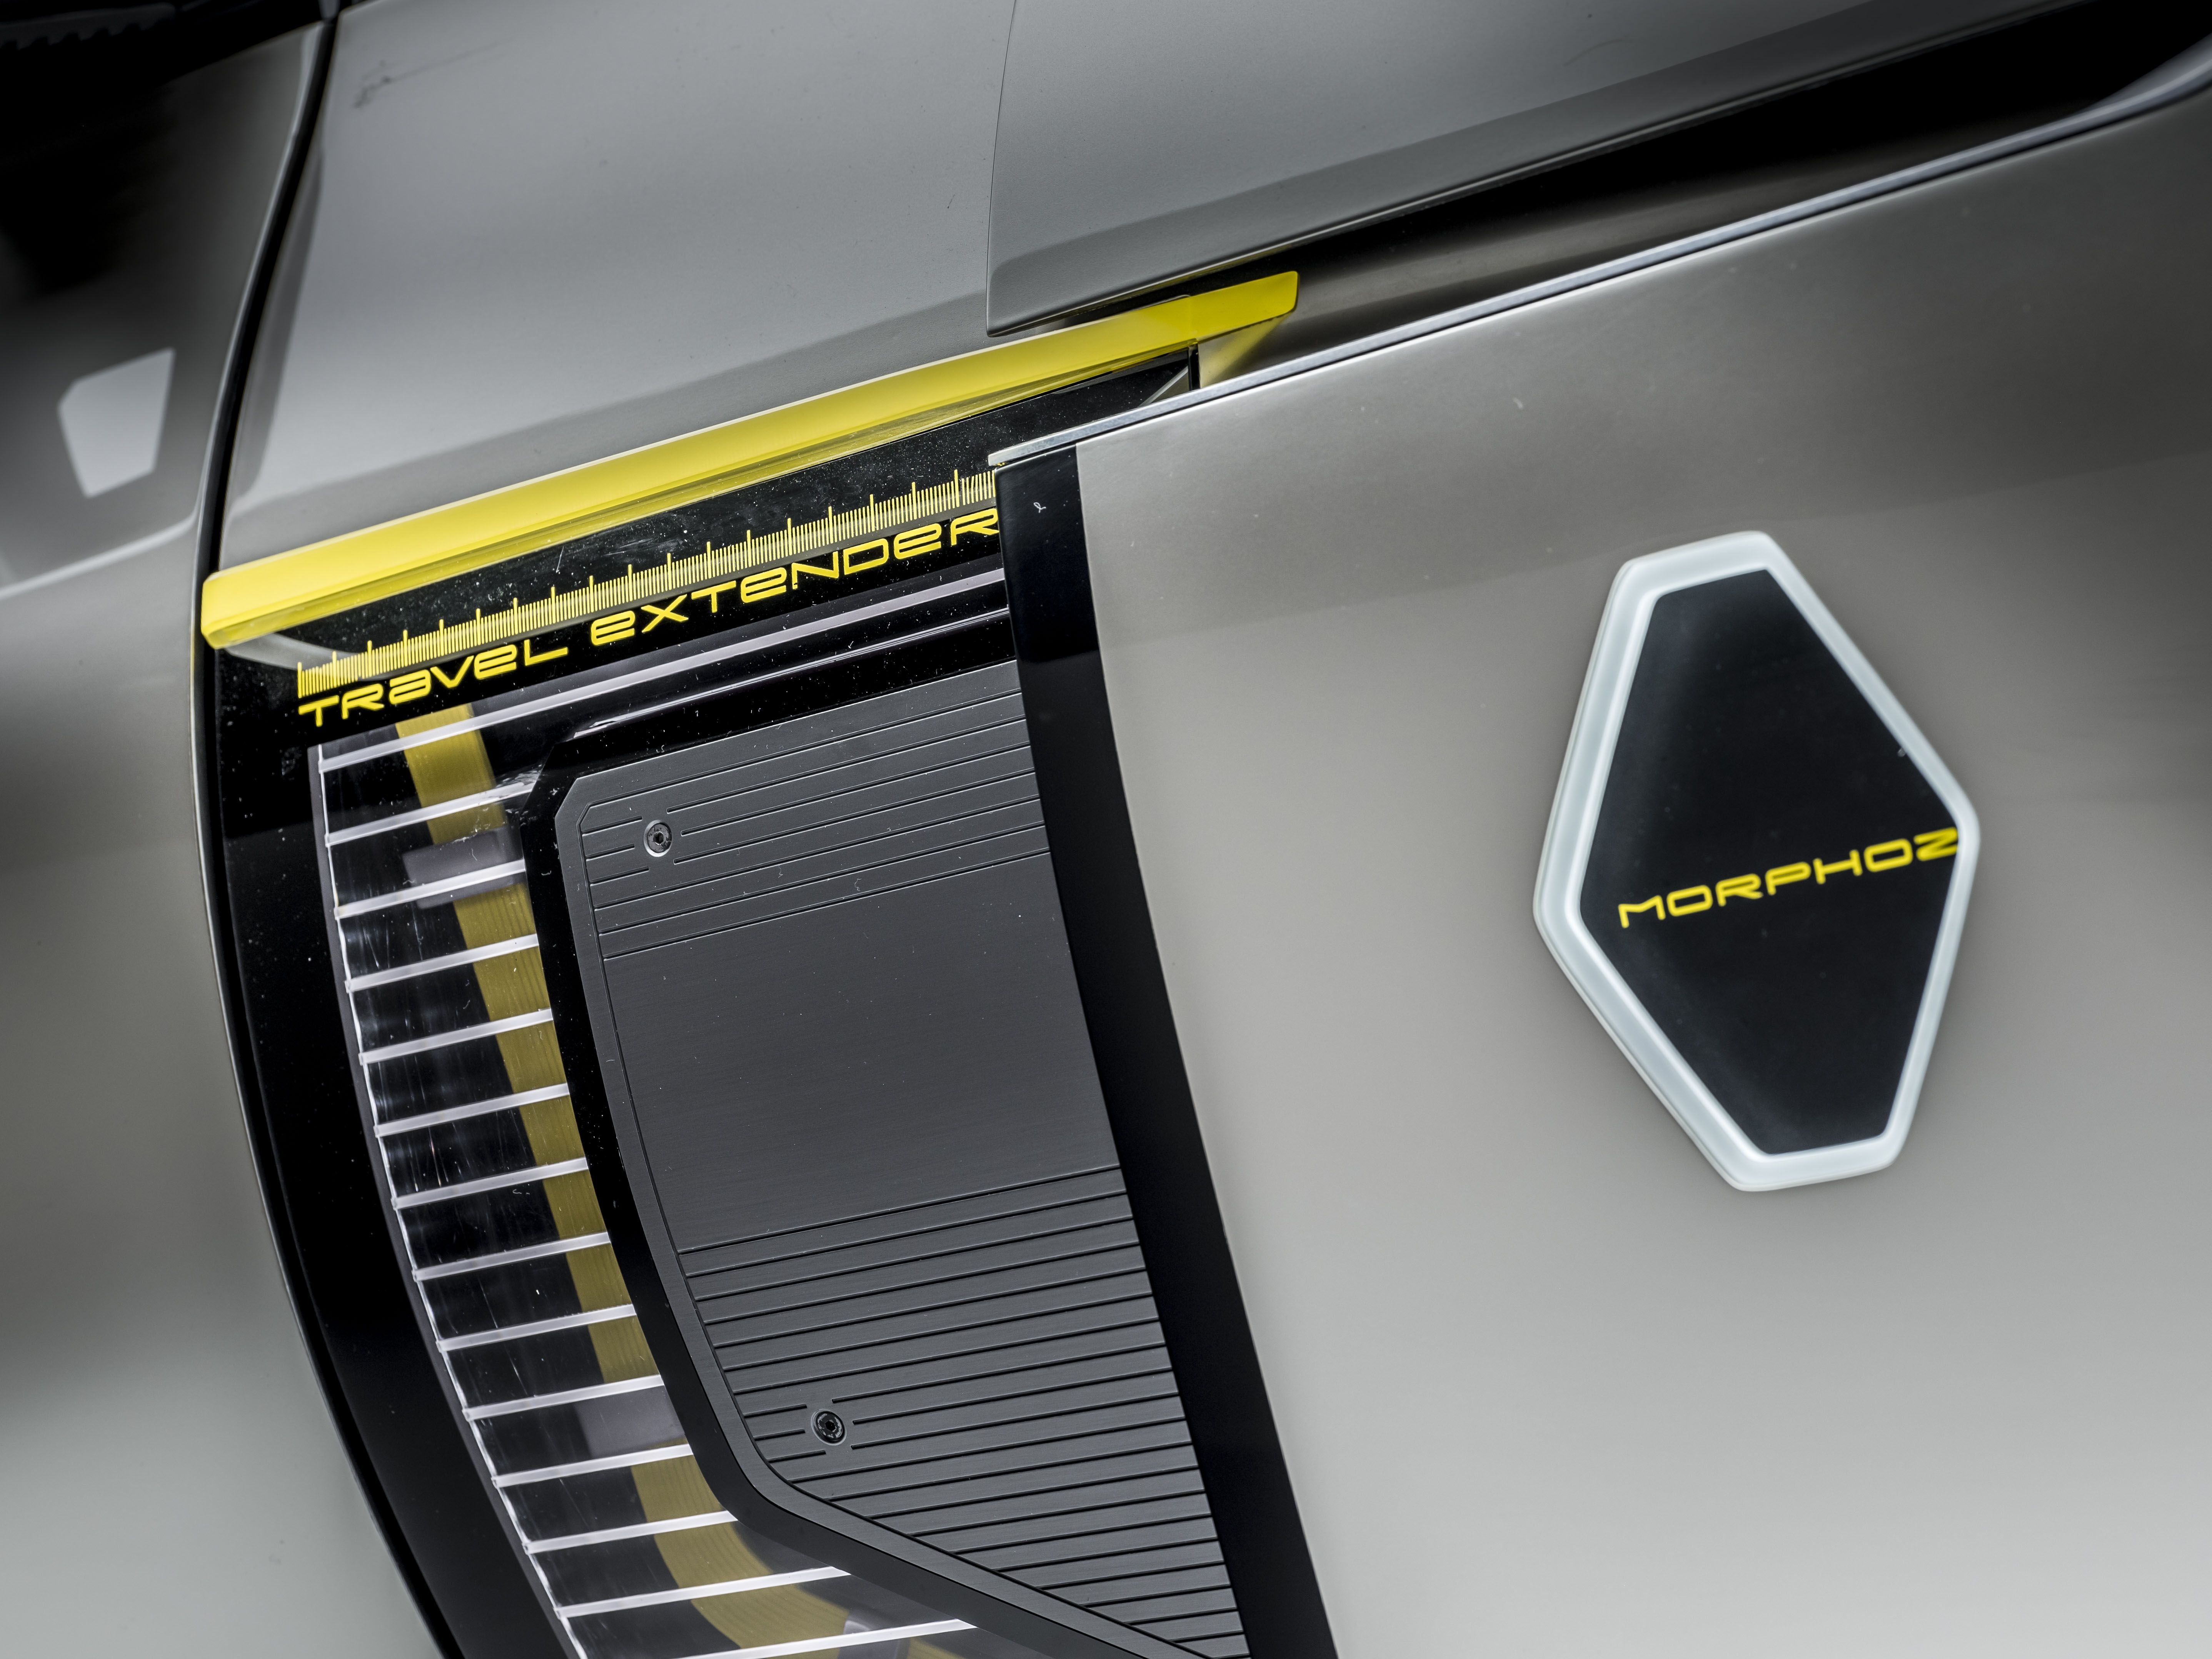 2020 Renault MORPHOZ concept